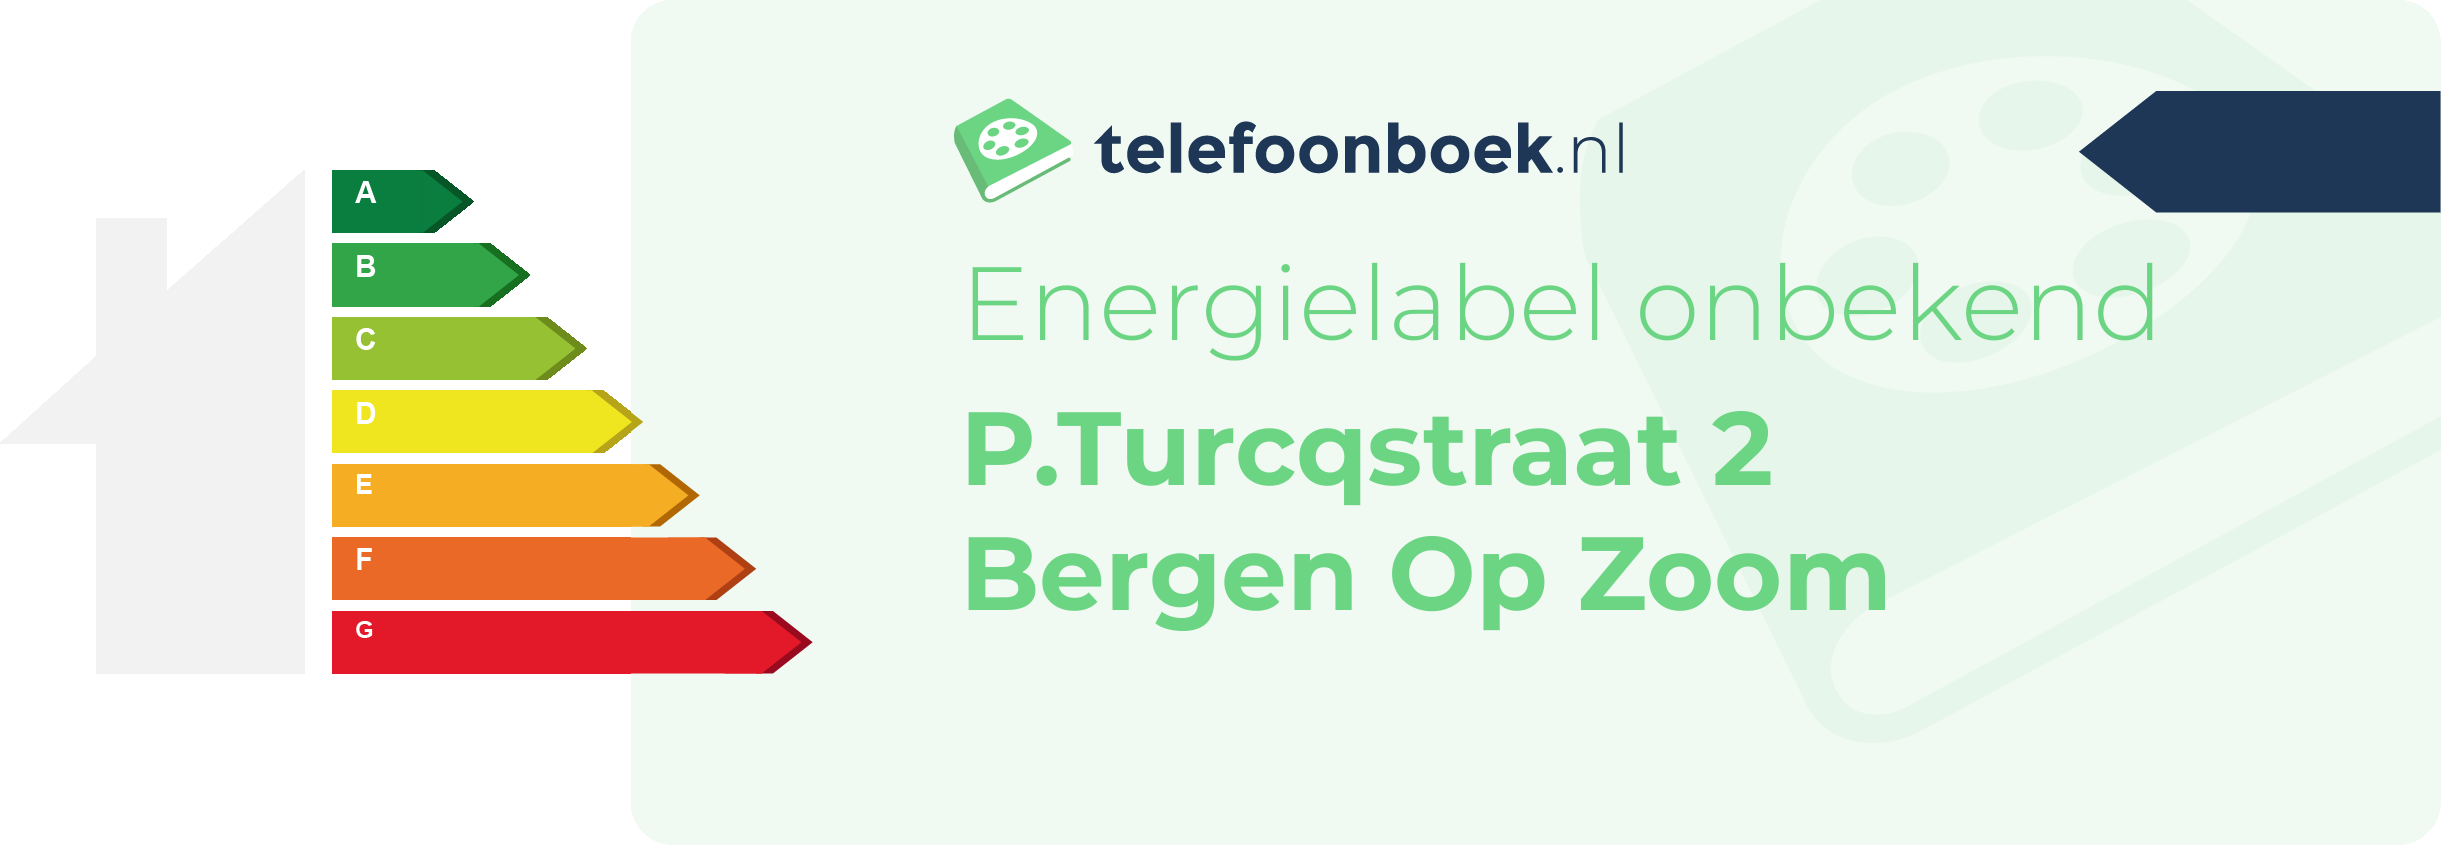 Energielabel P.Turcqstraat 2 Bergen Op Zoom